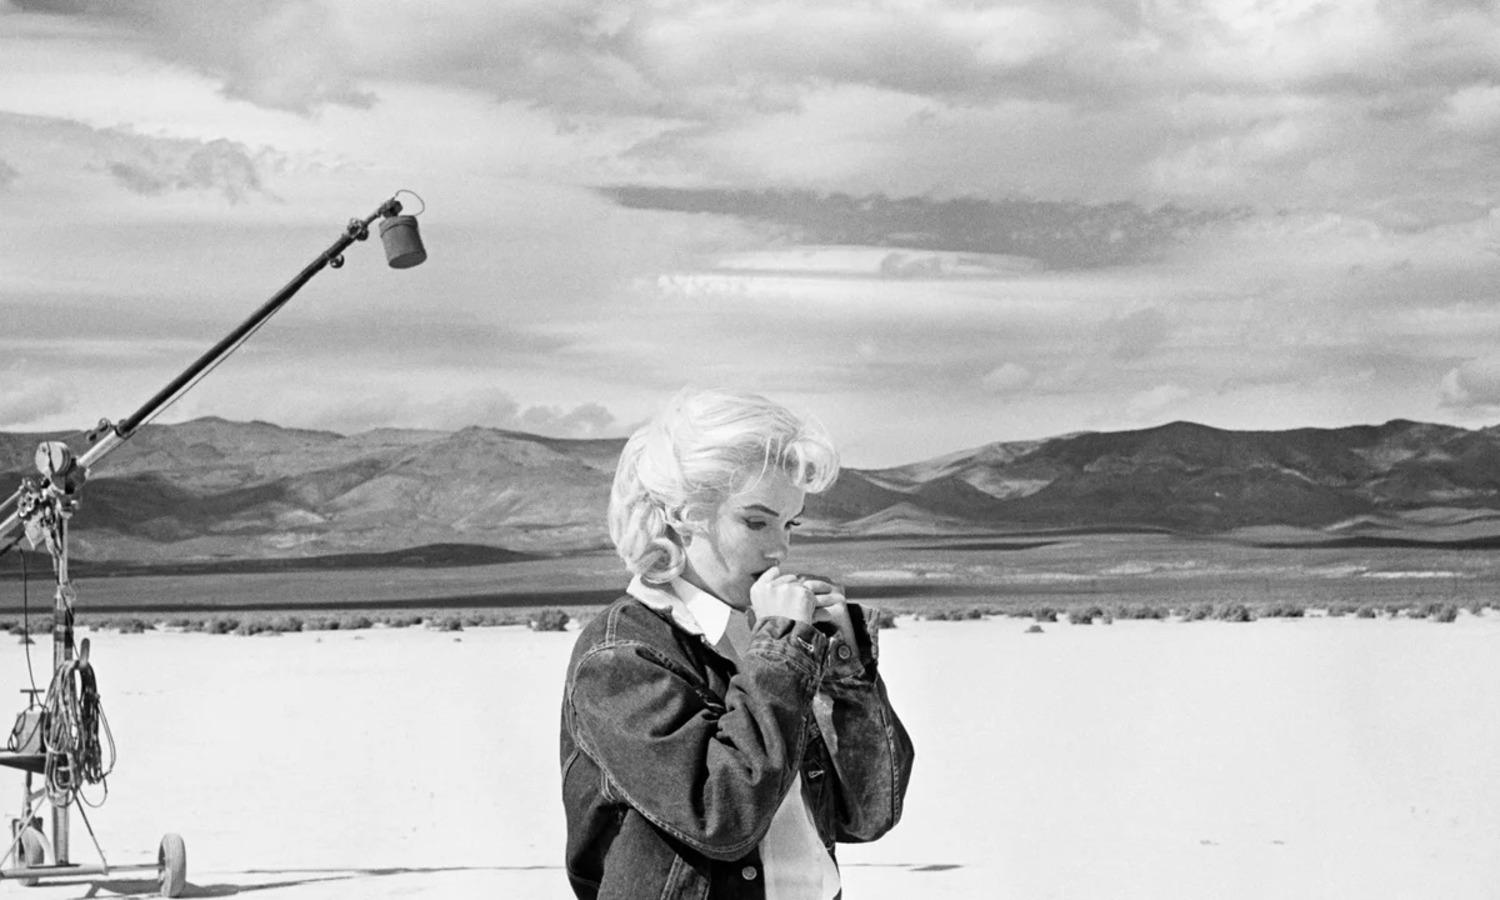 Marilyn Monroe am Set von "The Misfits", Reno, Nevada, 1960.

Alle verfügbaren Größen und Ausgaben:
20" x 24", Auflage 25 + 3 Probedrucke
24" x 34", Auflage 25 + 3 Probedrucke

"Eve Arnold, 1912 als Tochter russischer Einwanderer in Philadelphia